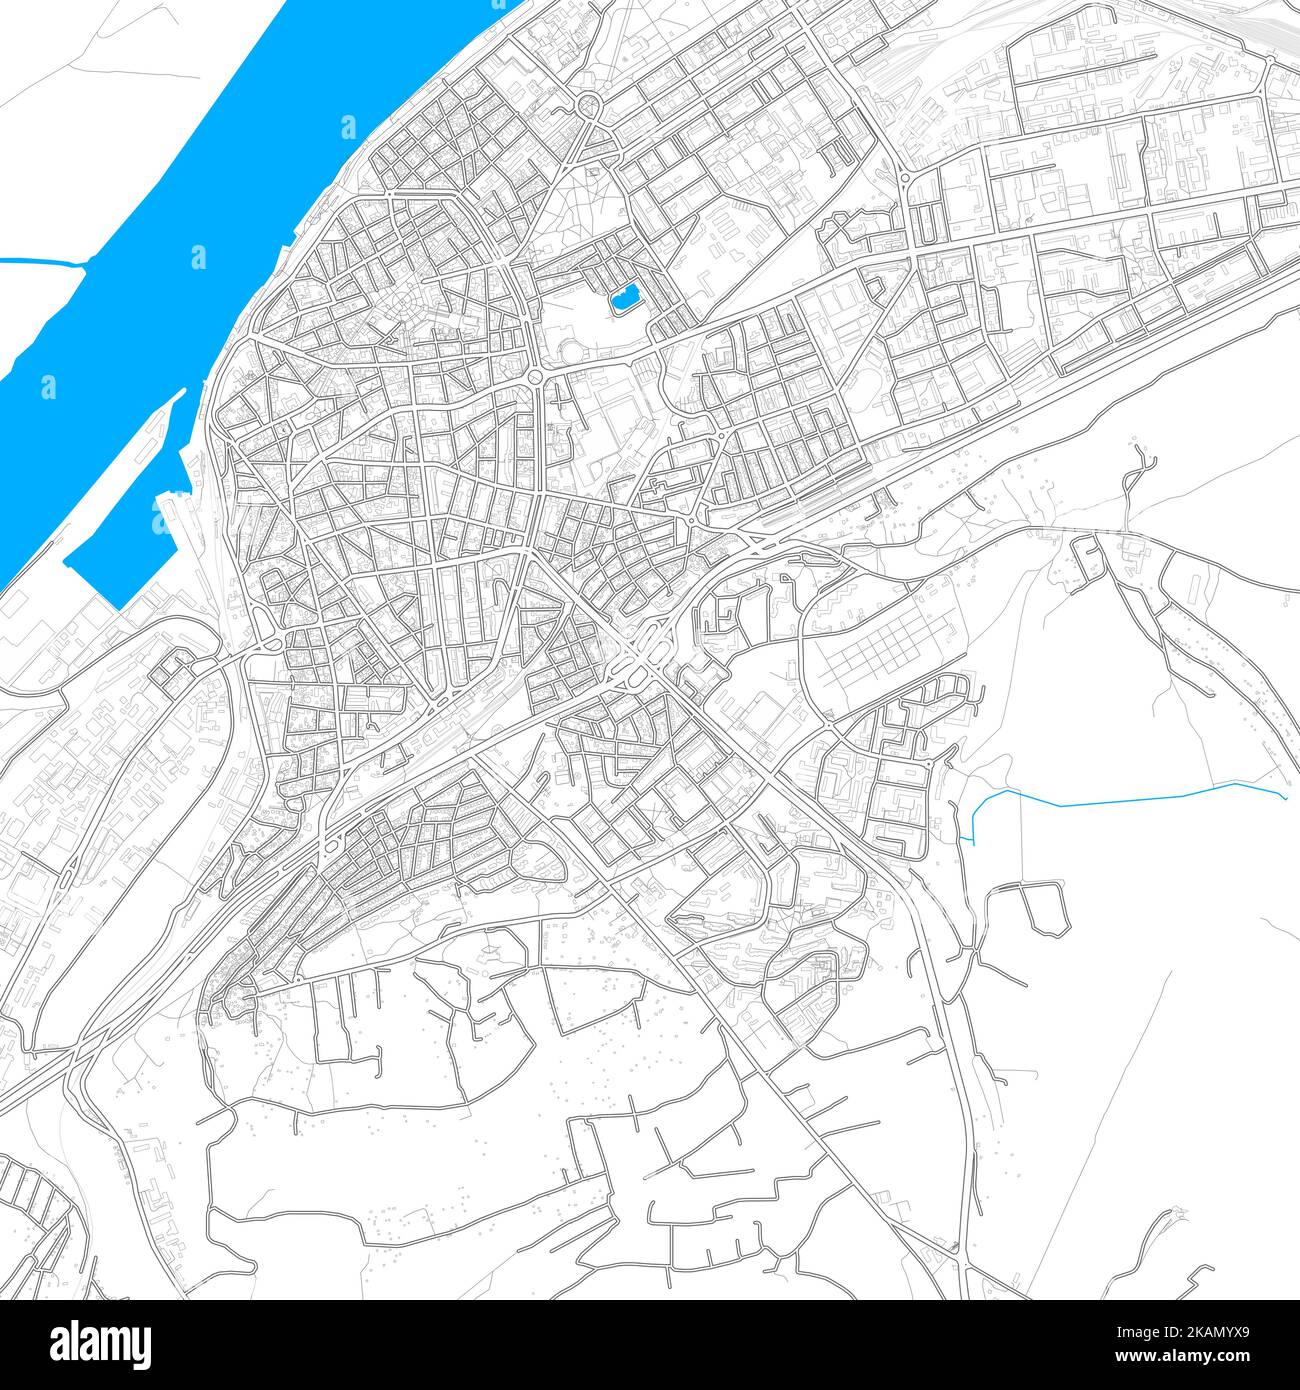 Ruse, Bulgaria mapa vectorial de alta resolución con rutas editables. Contornos brillantes para las carreteras principales. Utilícelo para cualquier fondo impreso o digital. sha azul Ilustración del Vector